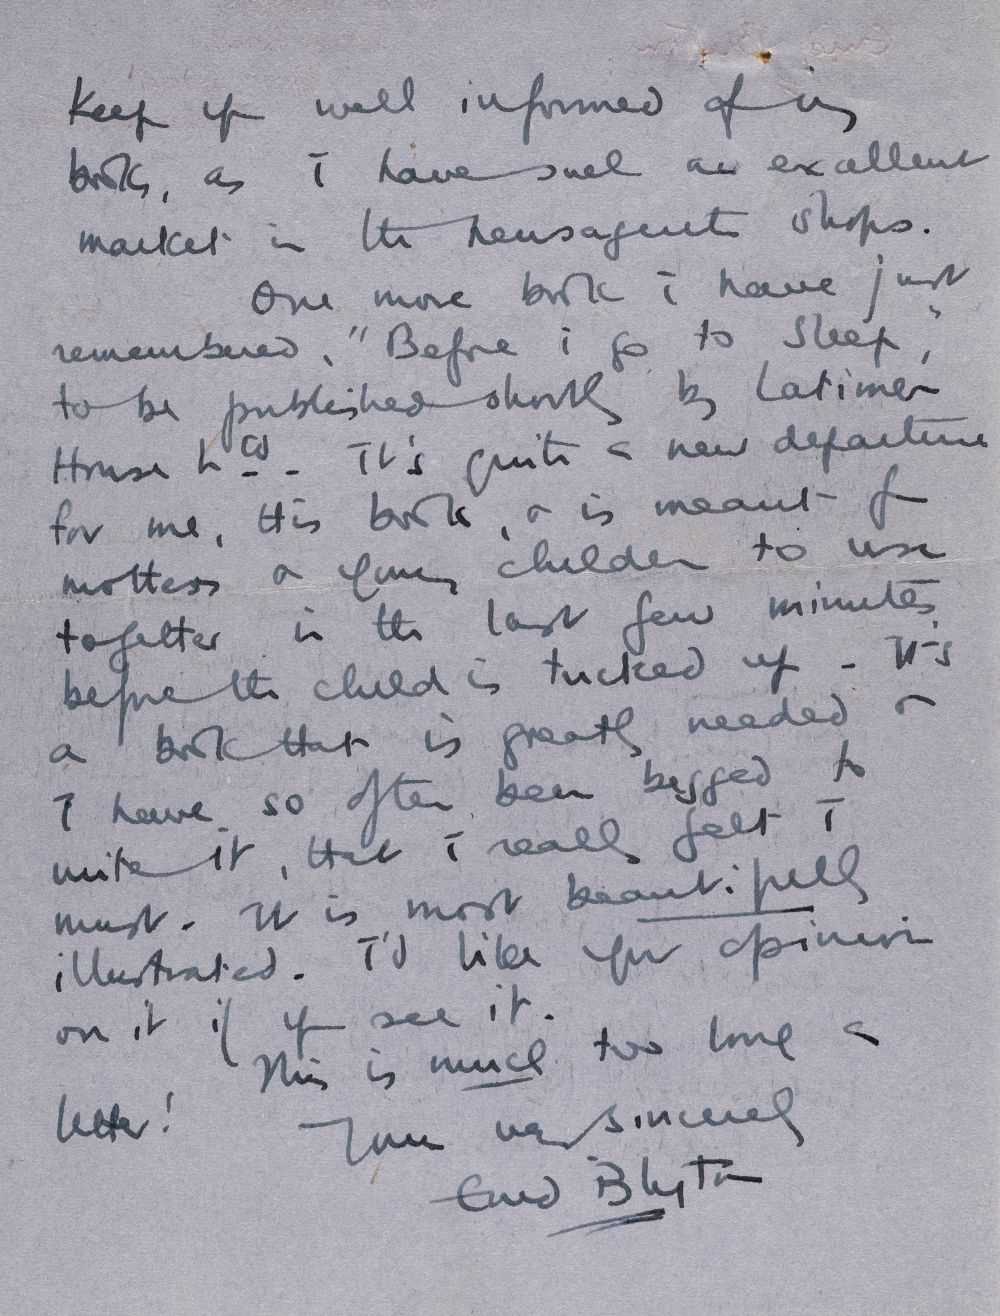 Lot 661 - Blyton (Enid, 1897-1968). Autograph letter signed, 23 August 1947